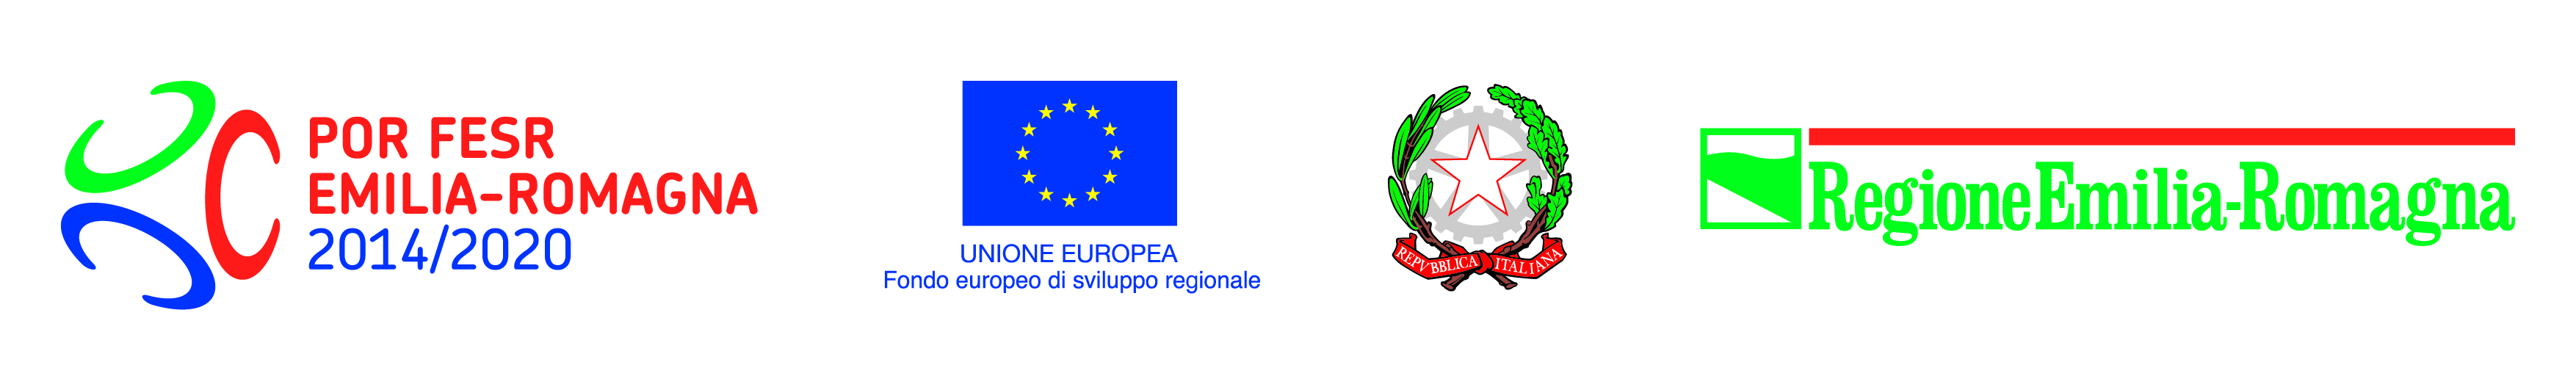 Por Fesr 2014-2020 - Programma Operativo Regionale del fondo Europeo di Sviluppo Regionale